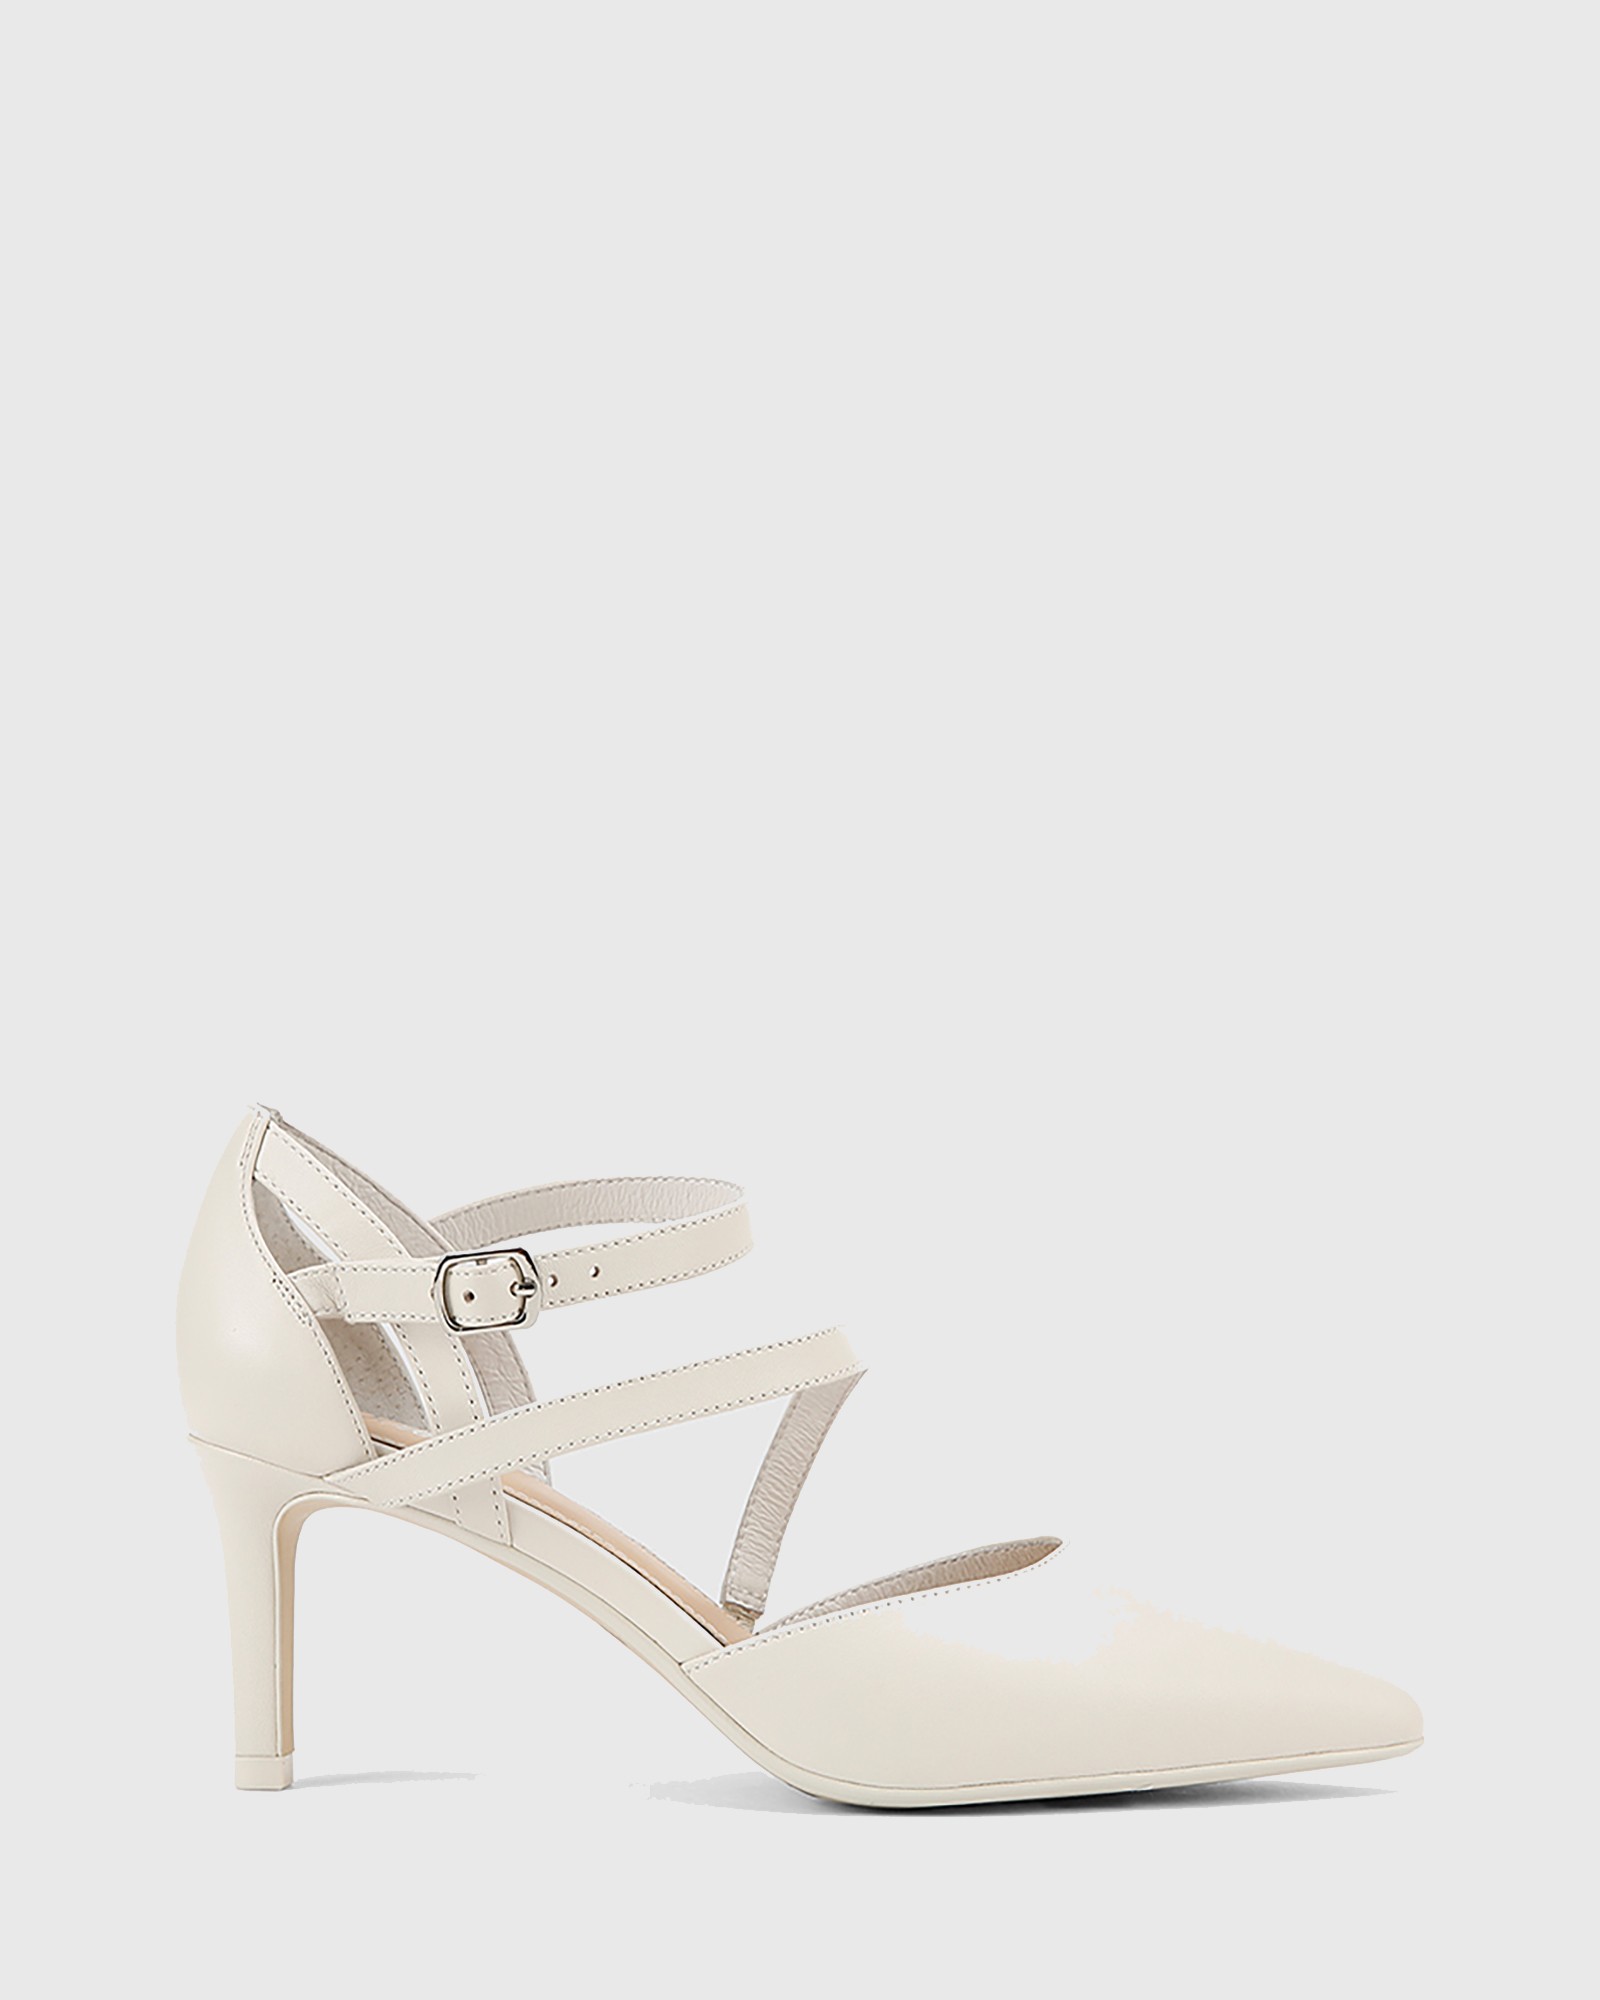 white pointed toe stiletto heels